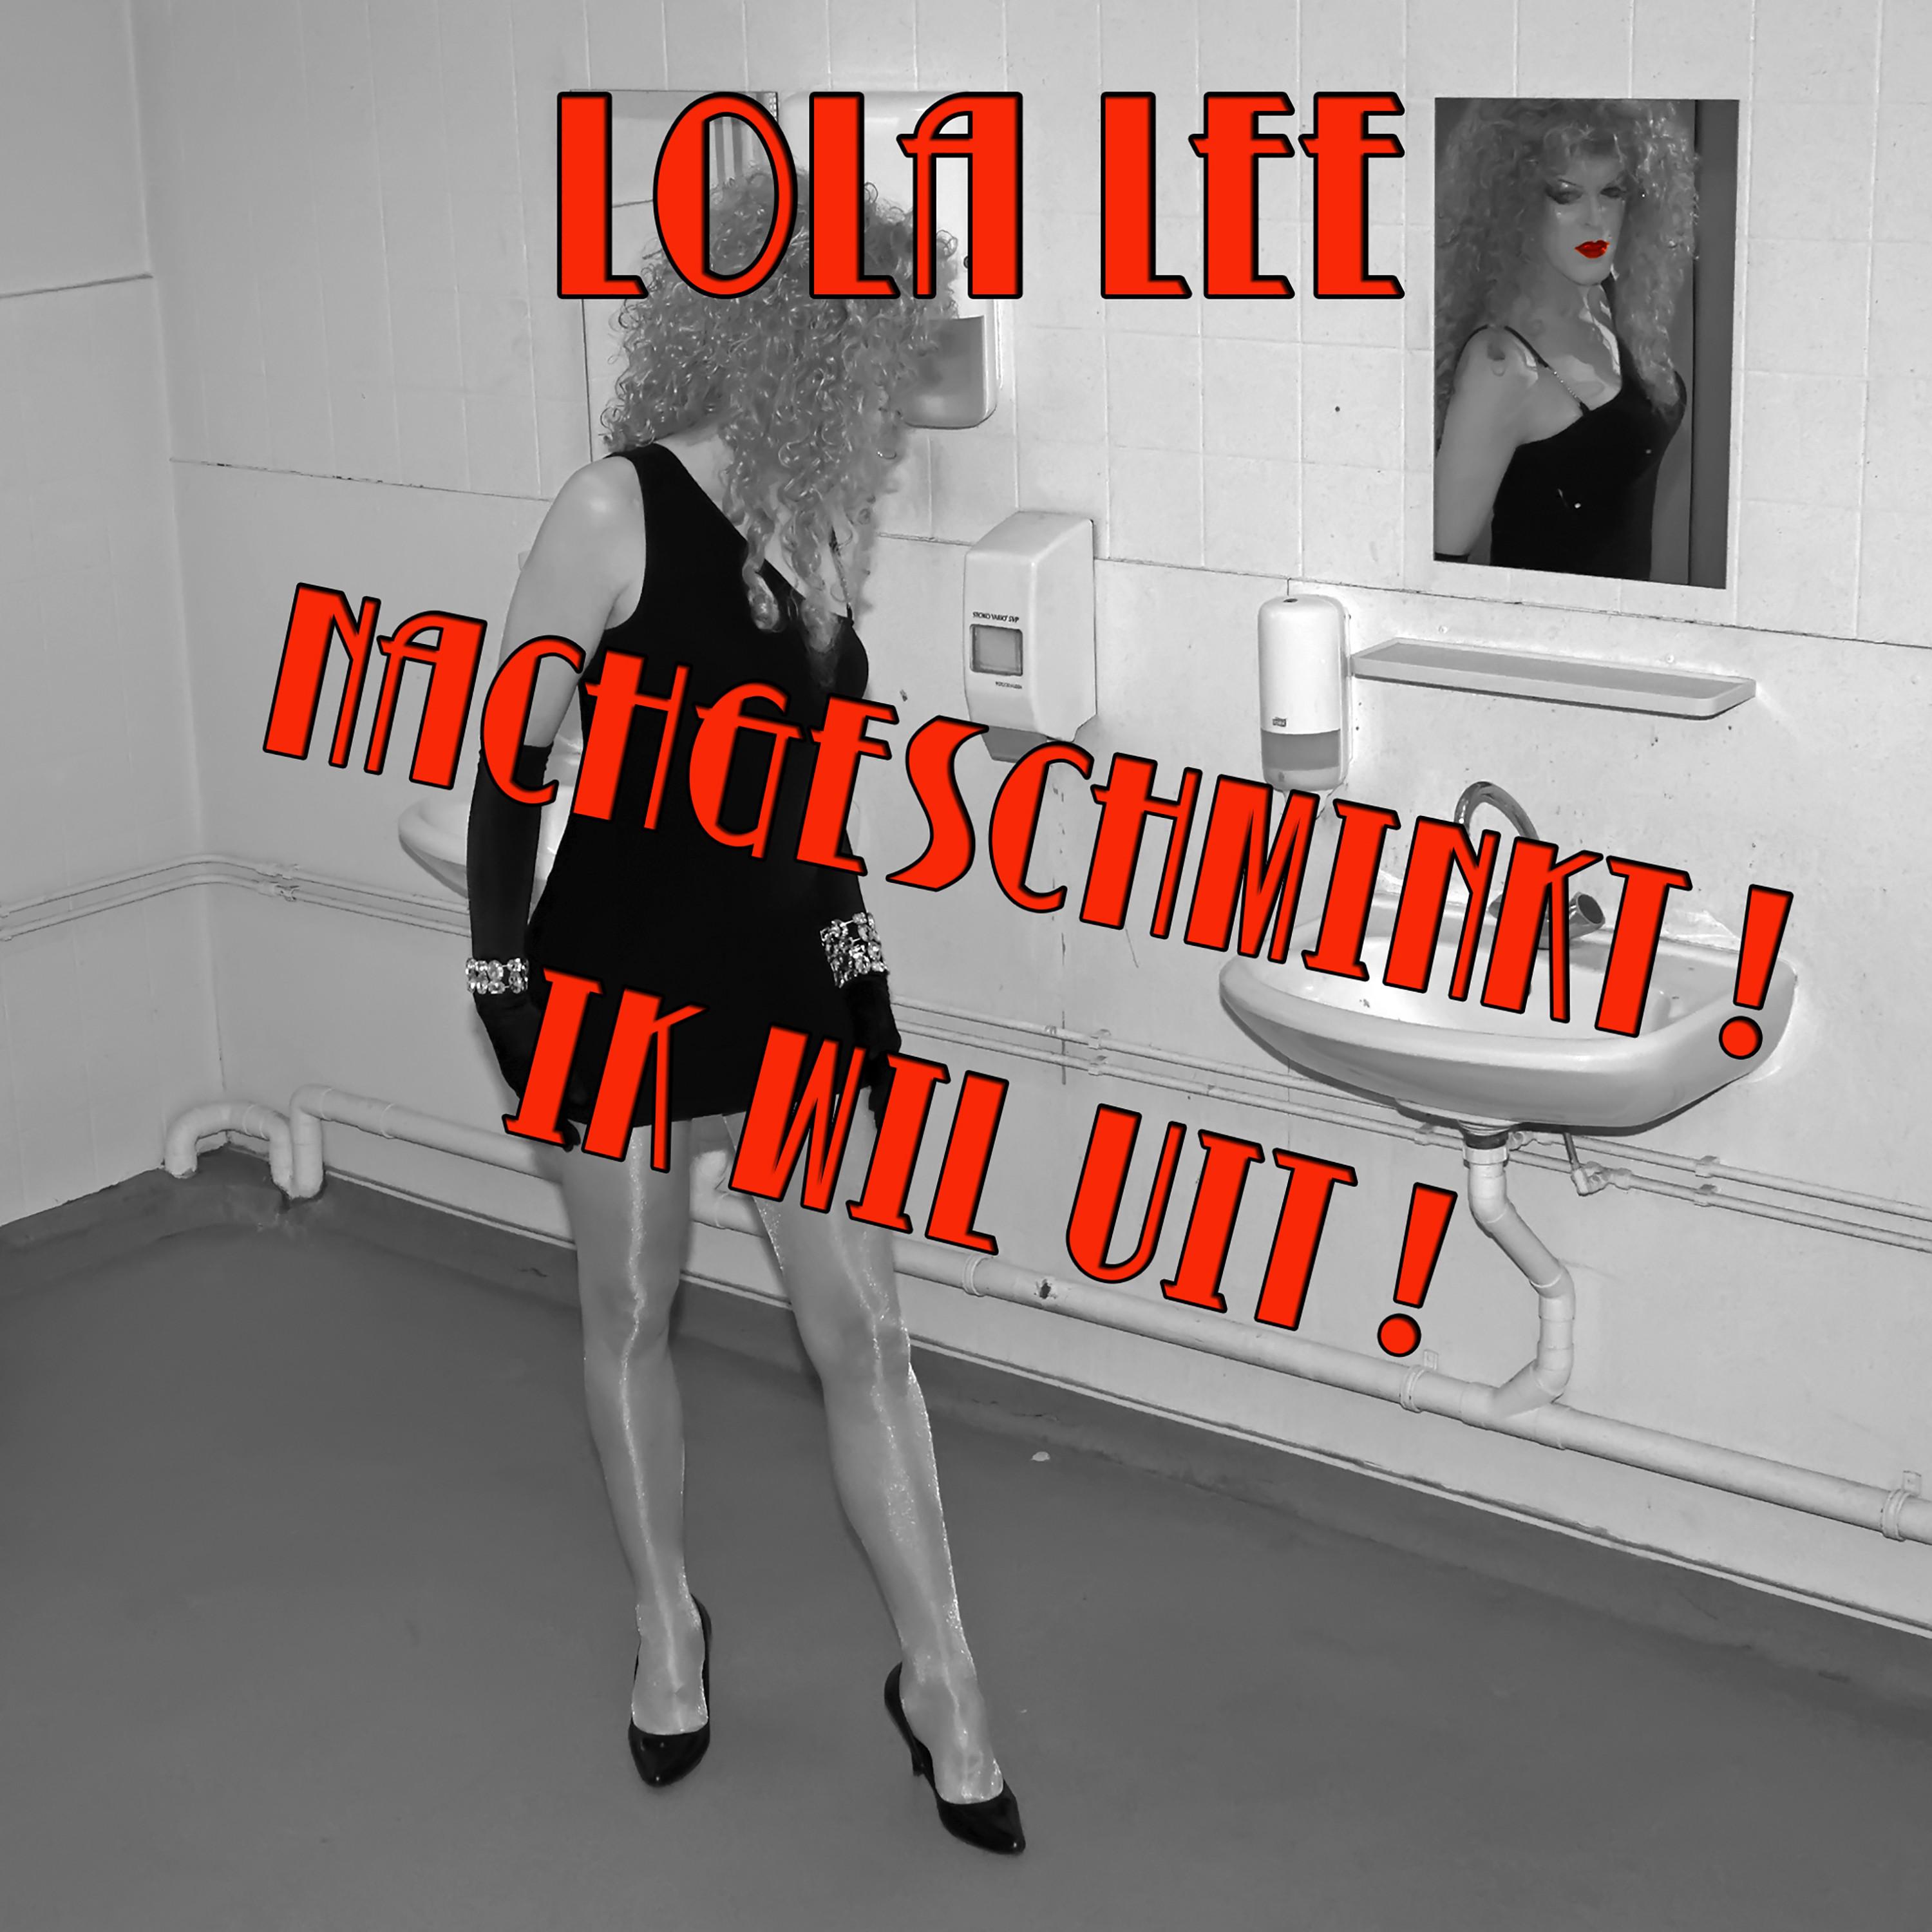 Lola Lee - Ik wil uit